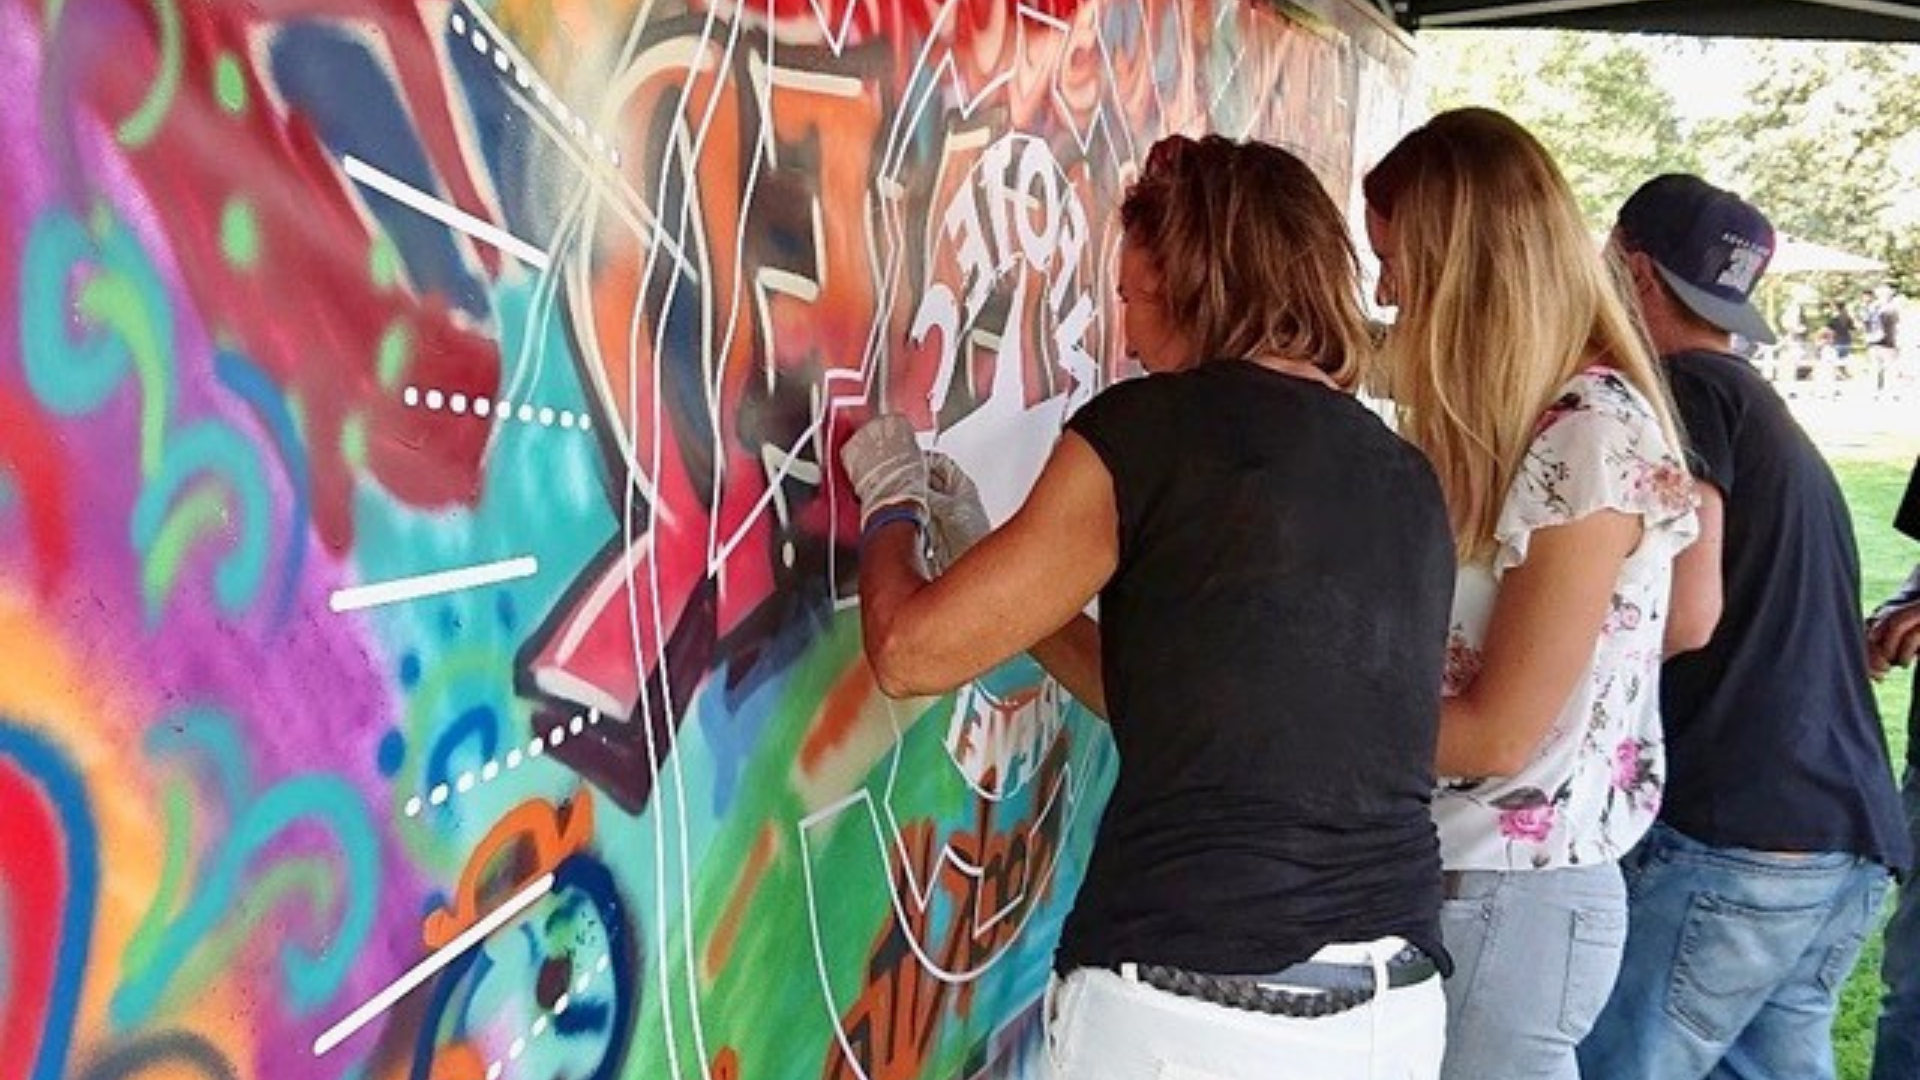 Graffitiwand welche von Frauen während Workshop bemalt wird